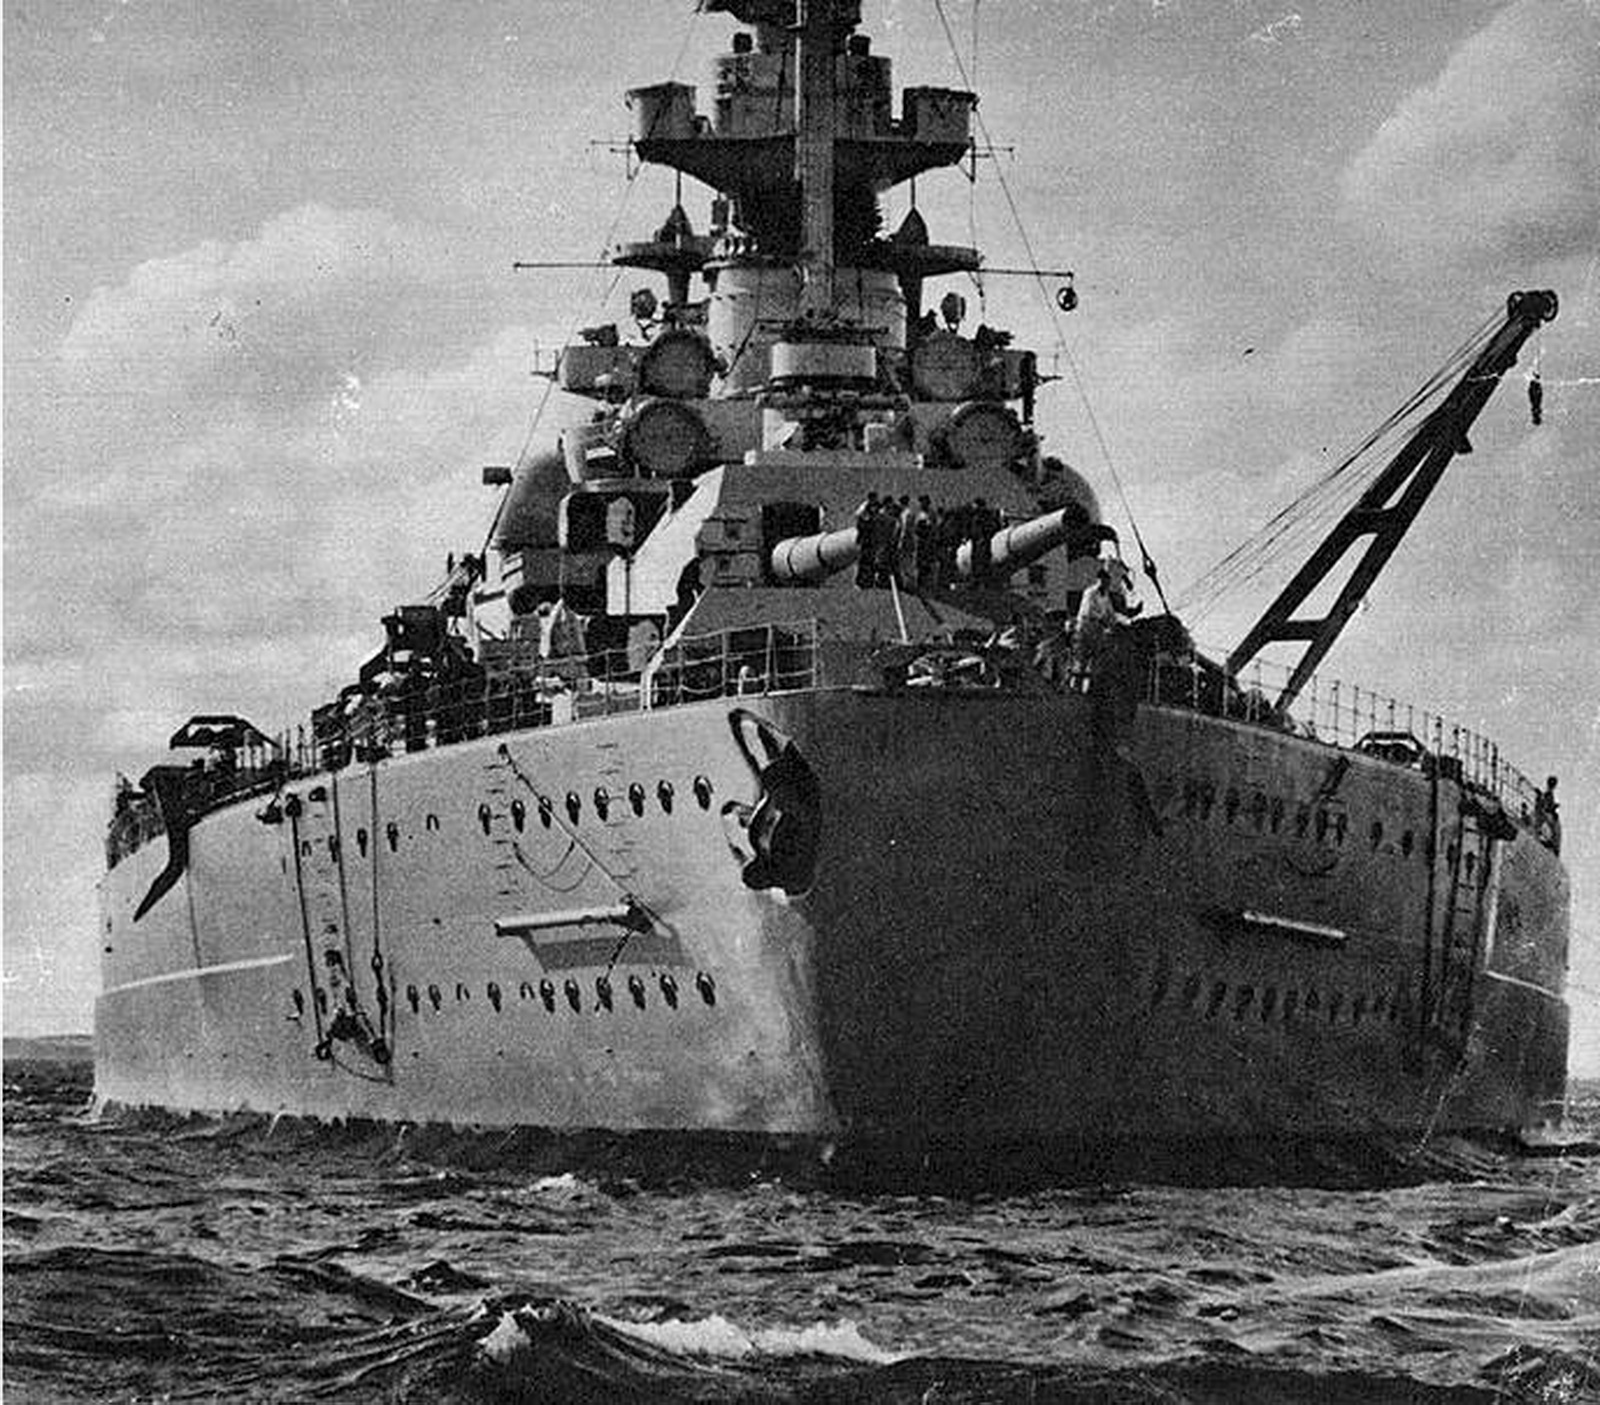 World War II Pictures In Details: Stern of Battleship Bismarck